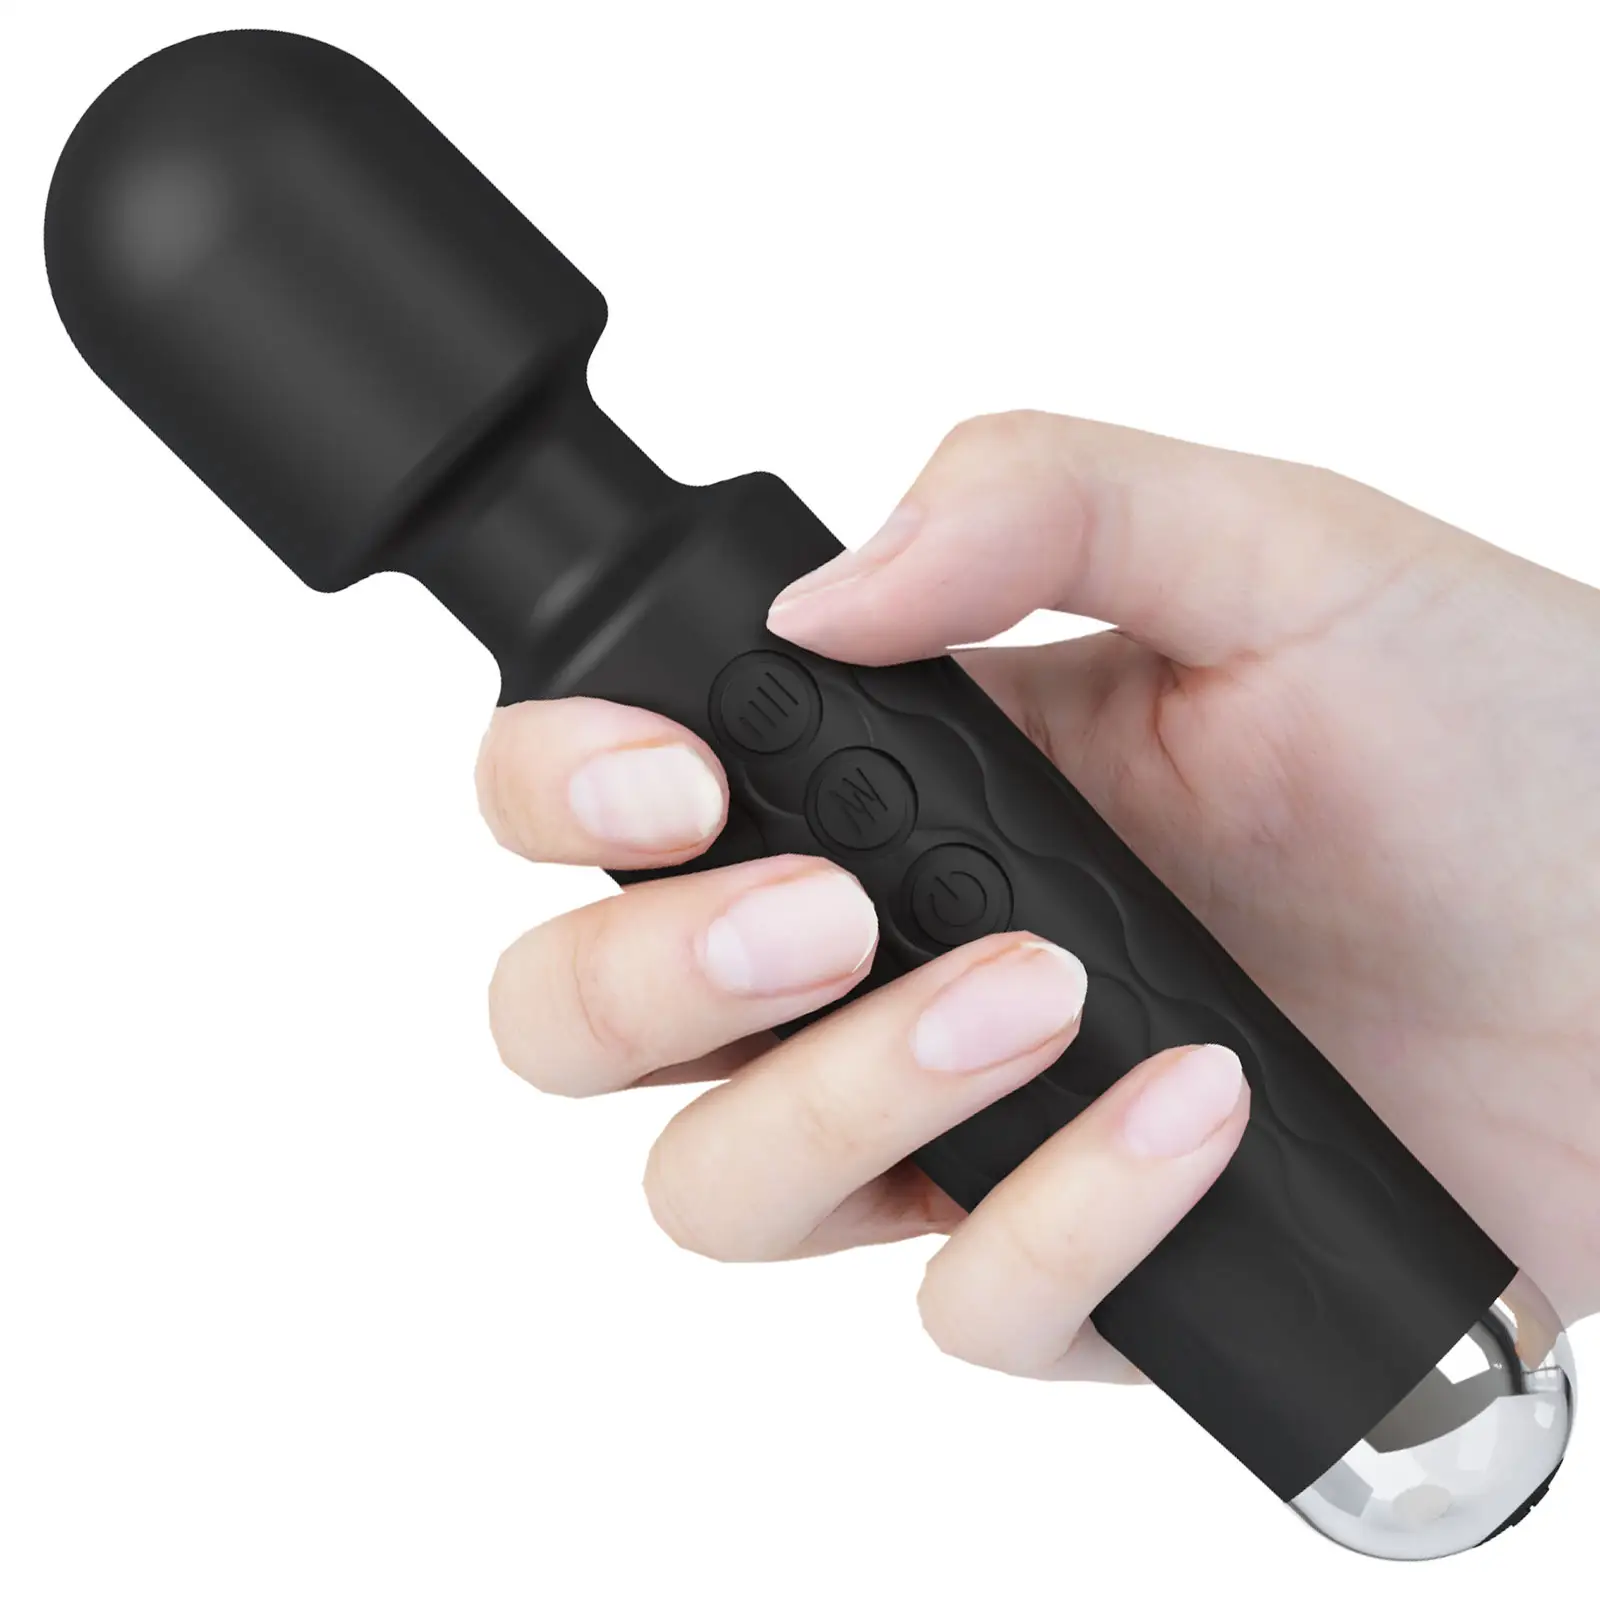 Los fabricantes pueden personalizar adultos eléctrico de mano Av palo masajeador femenino consolador vibrador pareja juguetes sexuales